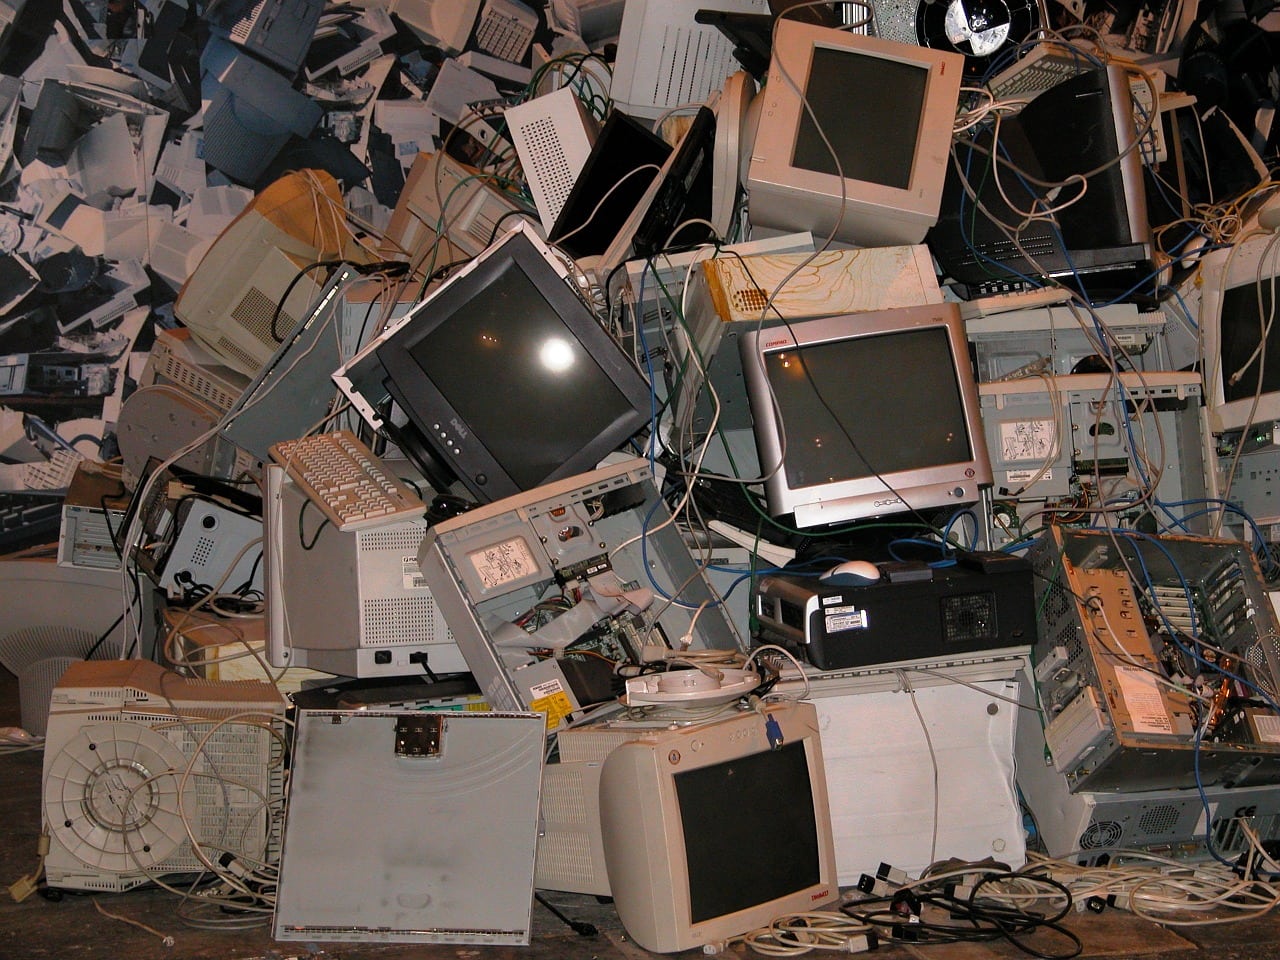 E-Waste Recycling